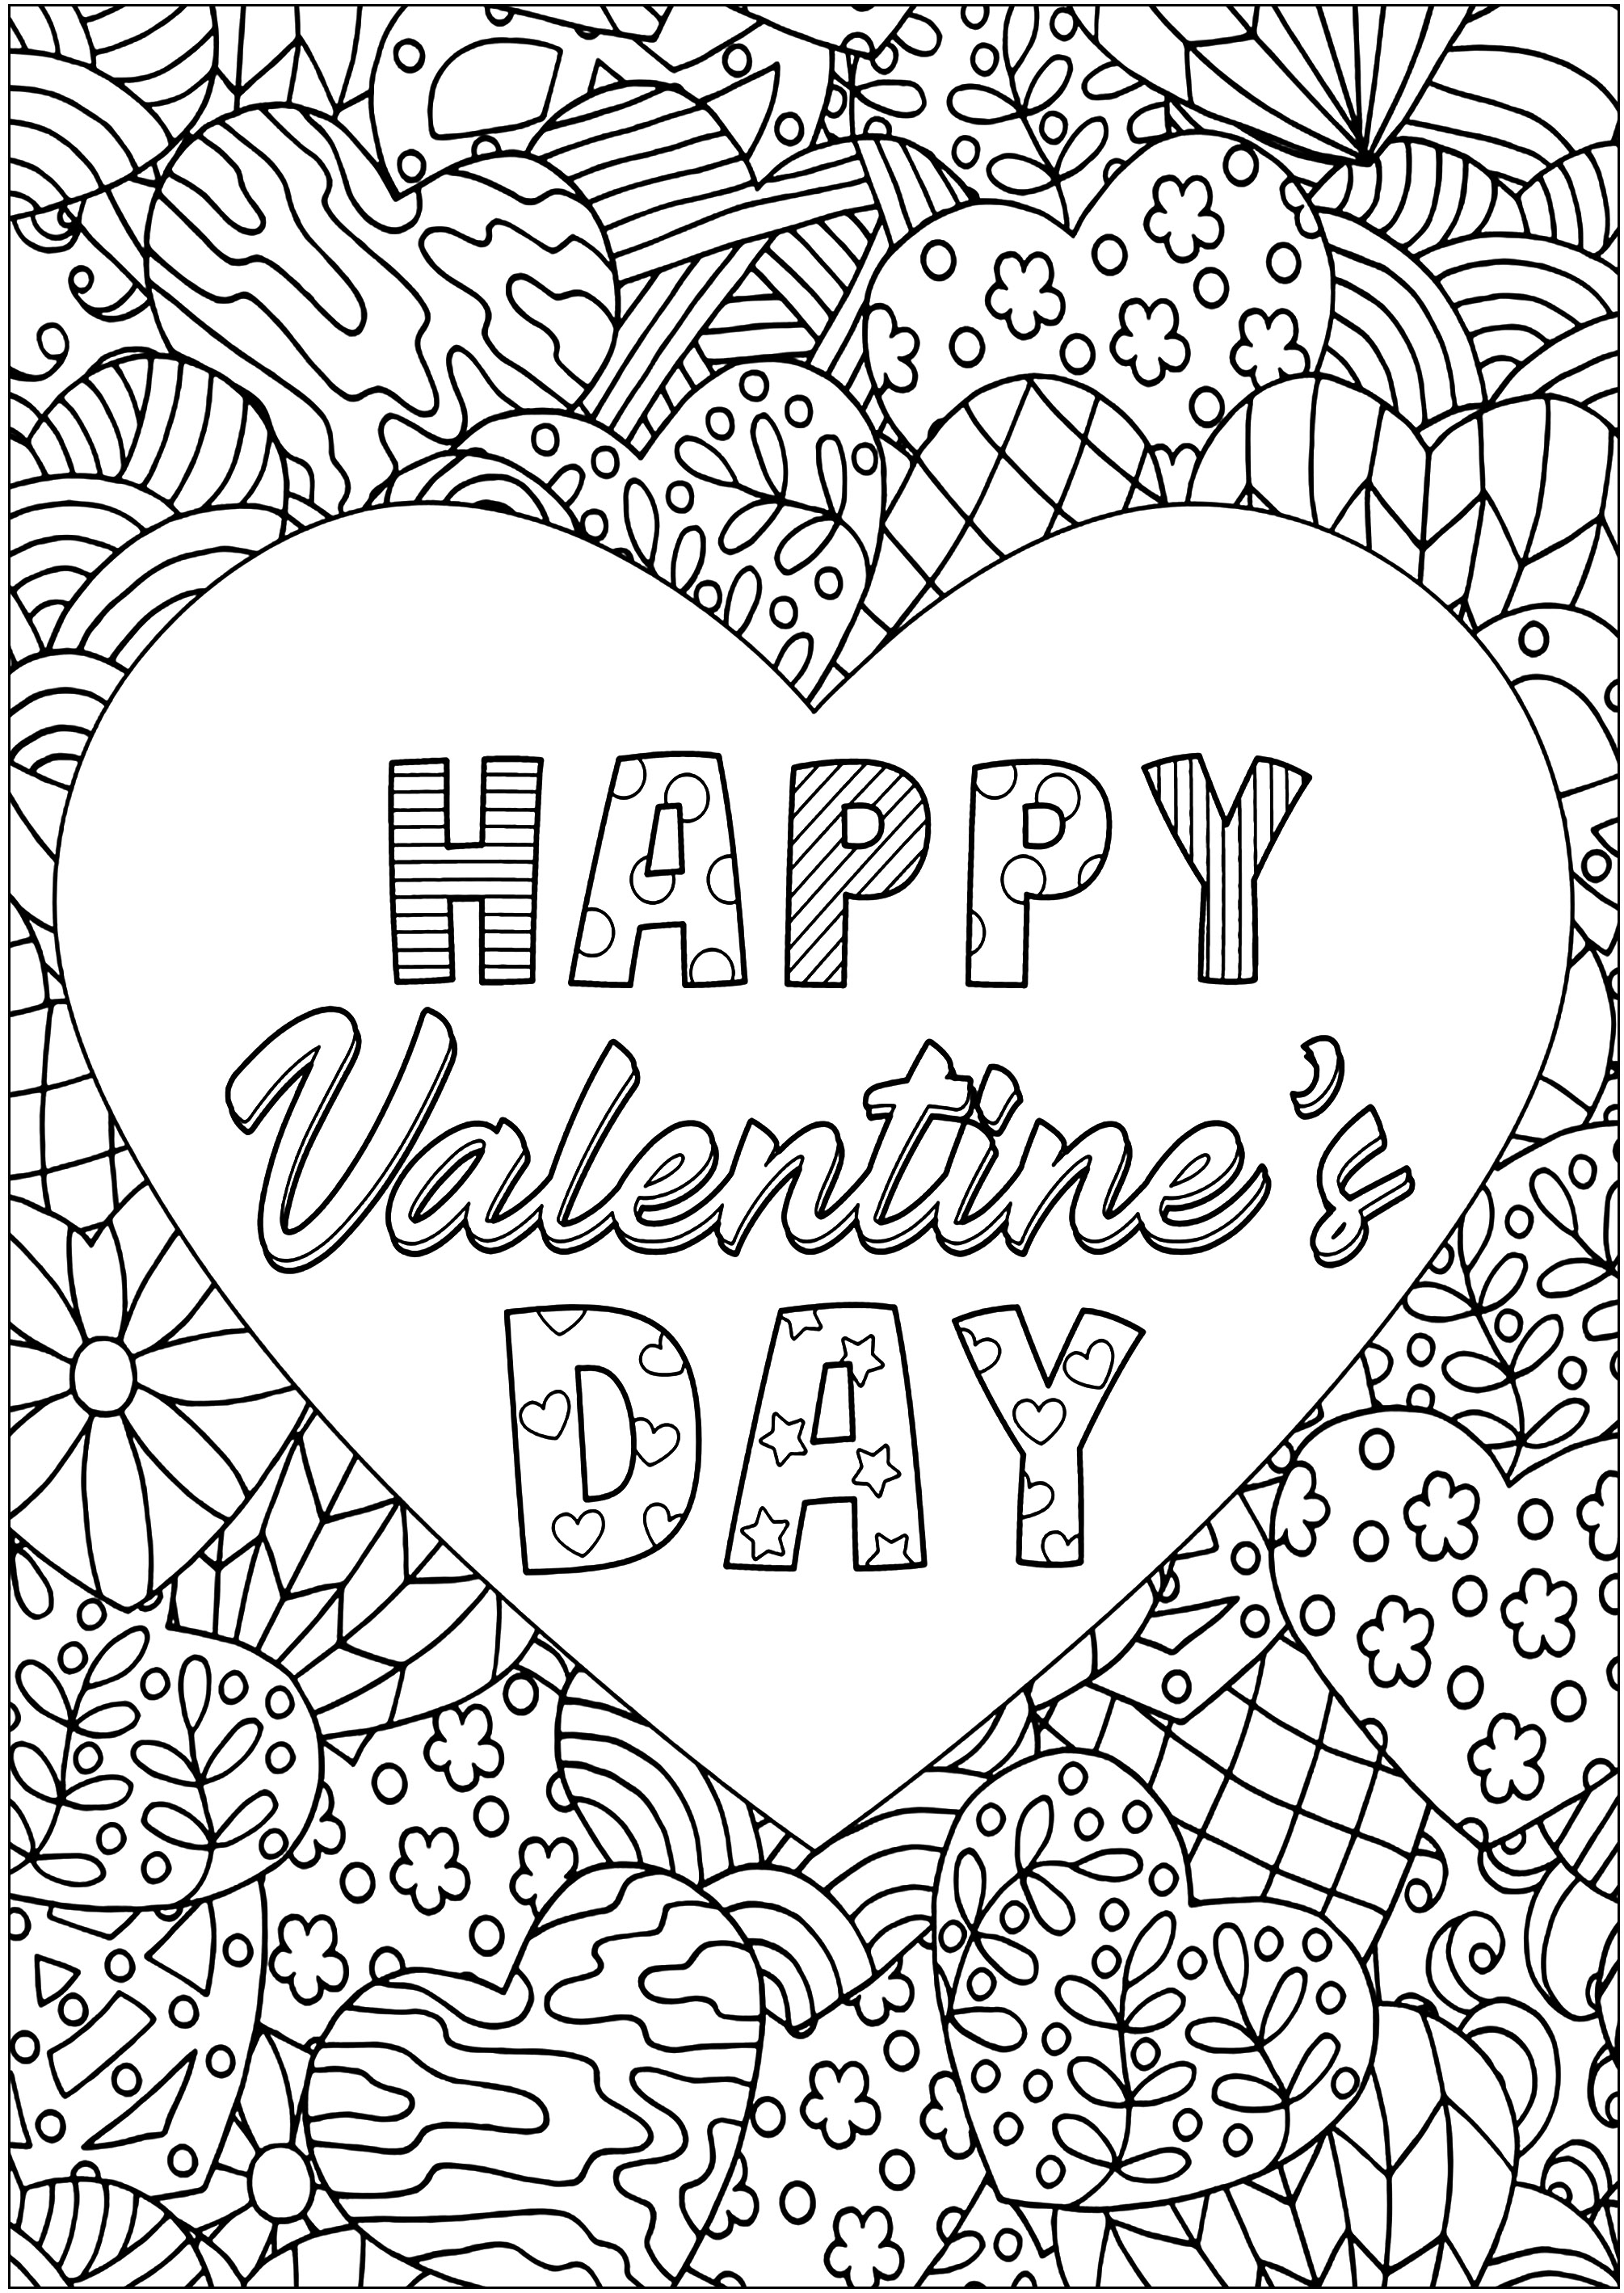 Coração de São Valentim com desenhos intrincados. Corações com padrões rodeiam um coração grande com o texto 'HAPPY VALENTINE'S DAY'.